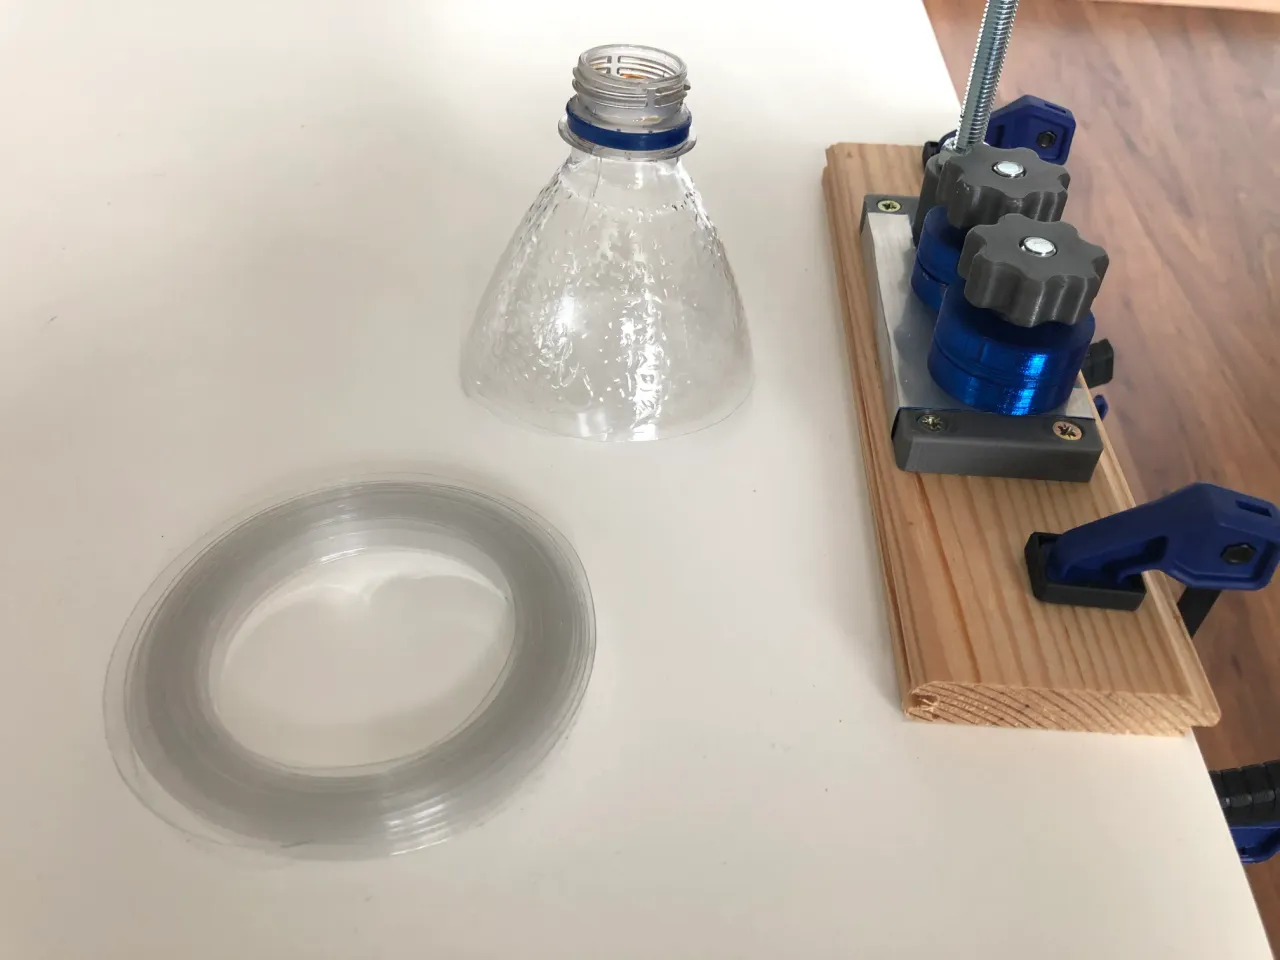 Simple PET Bottle Cutter by mirabatek